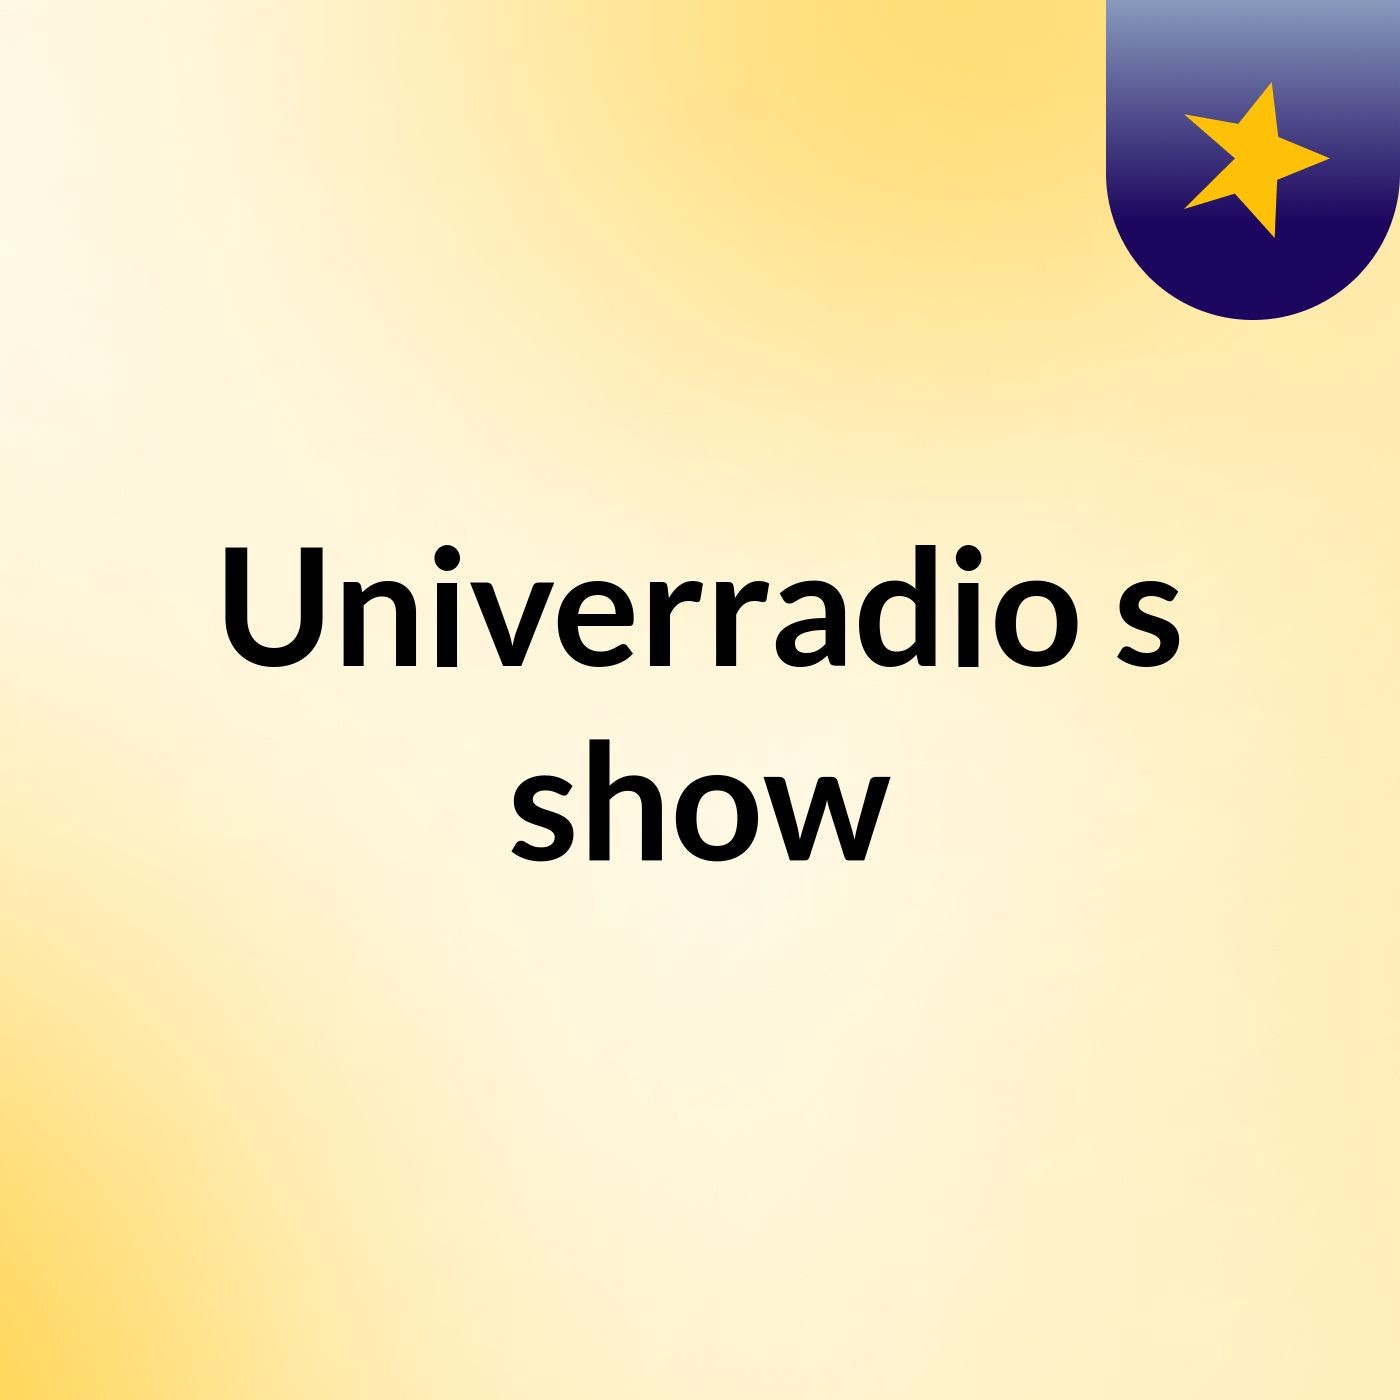 Univerradio's show